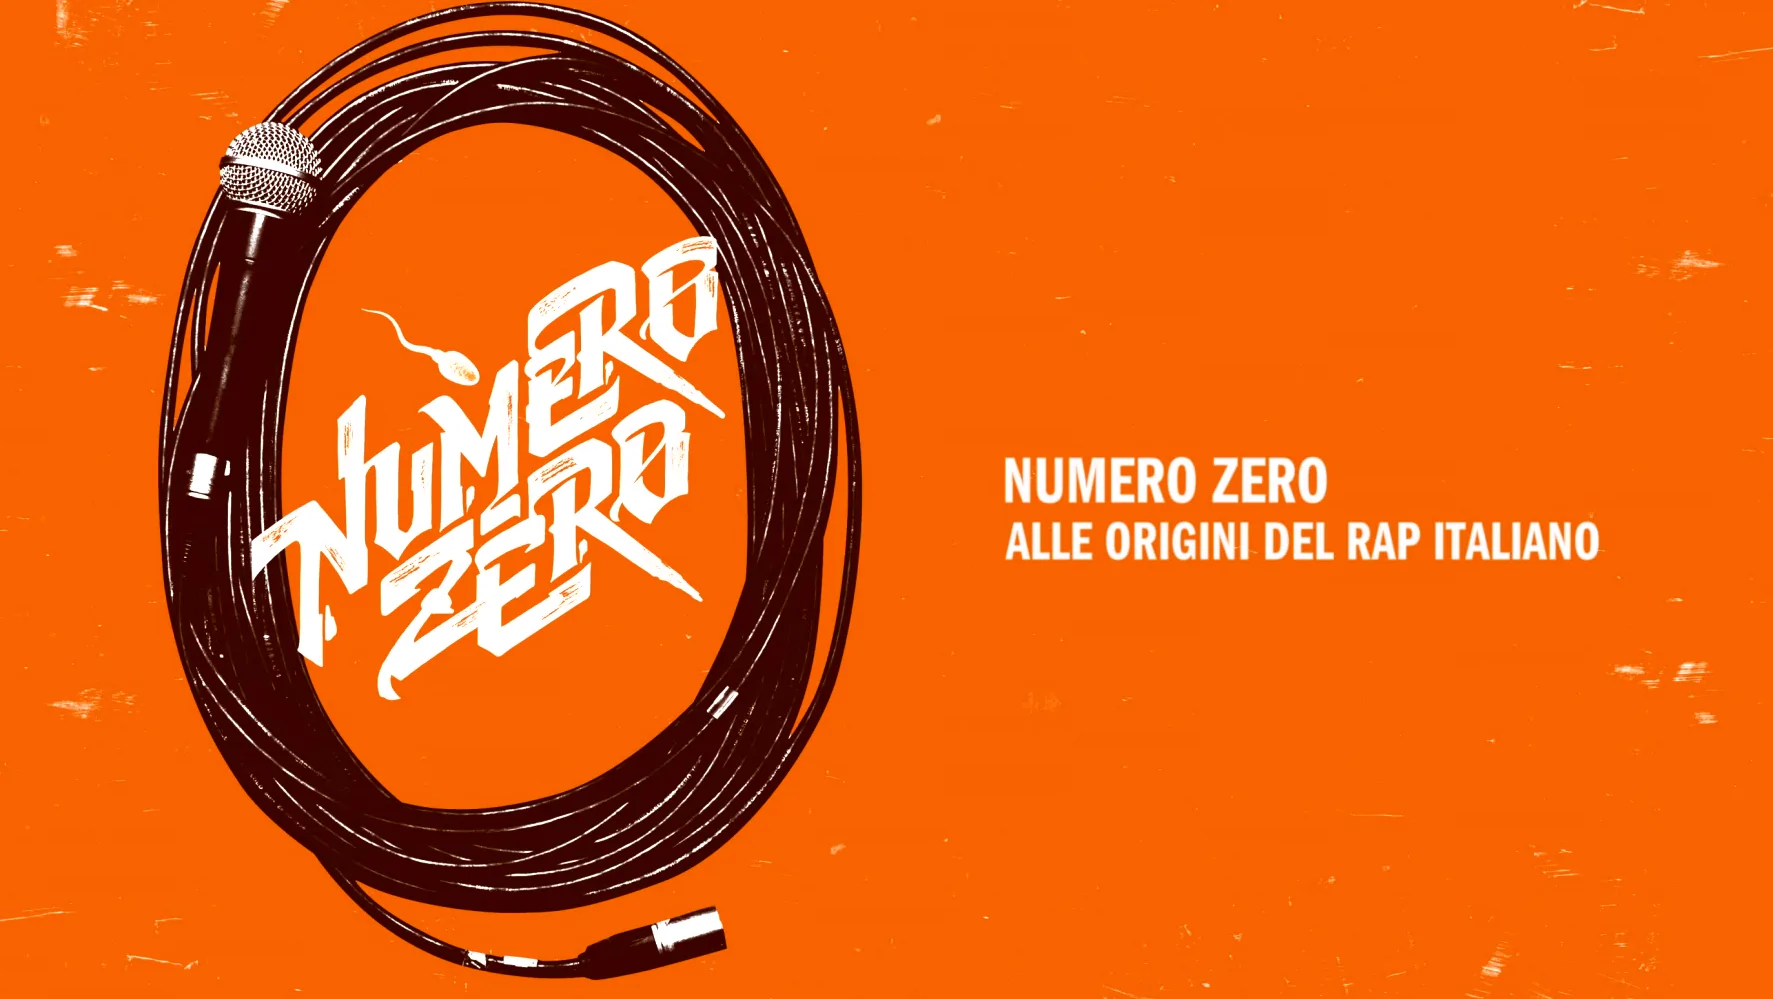 Numero zero: alle origini del rap italiano. J-Ax presente nel docufilm